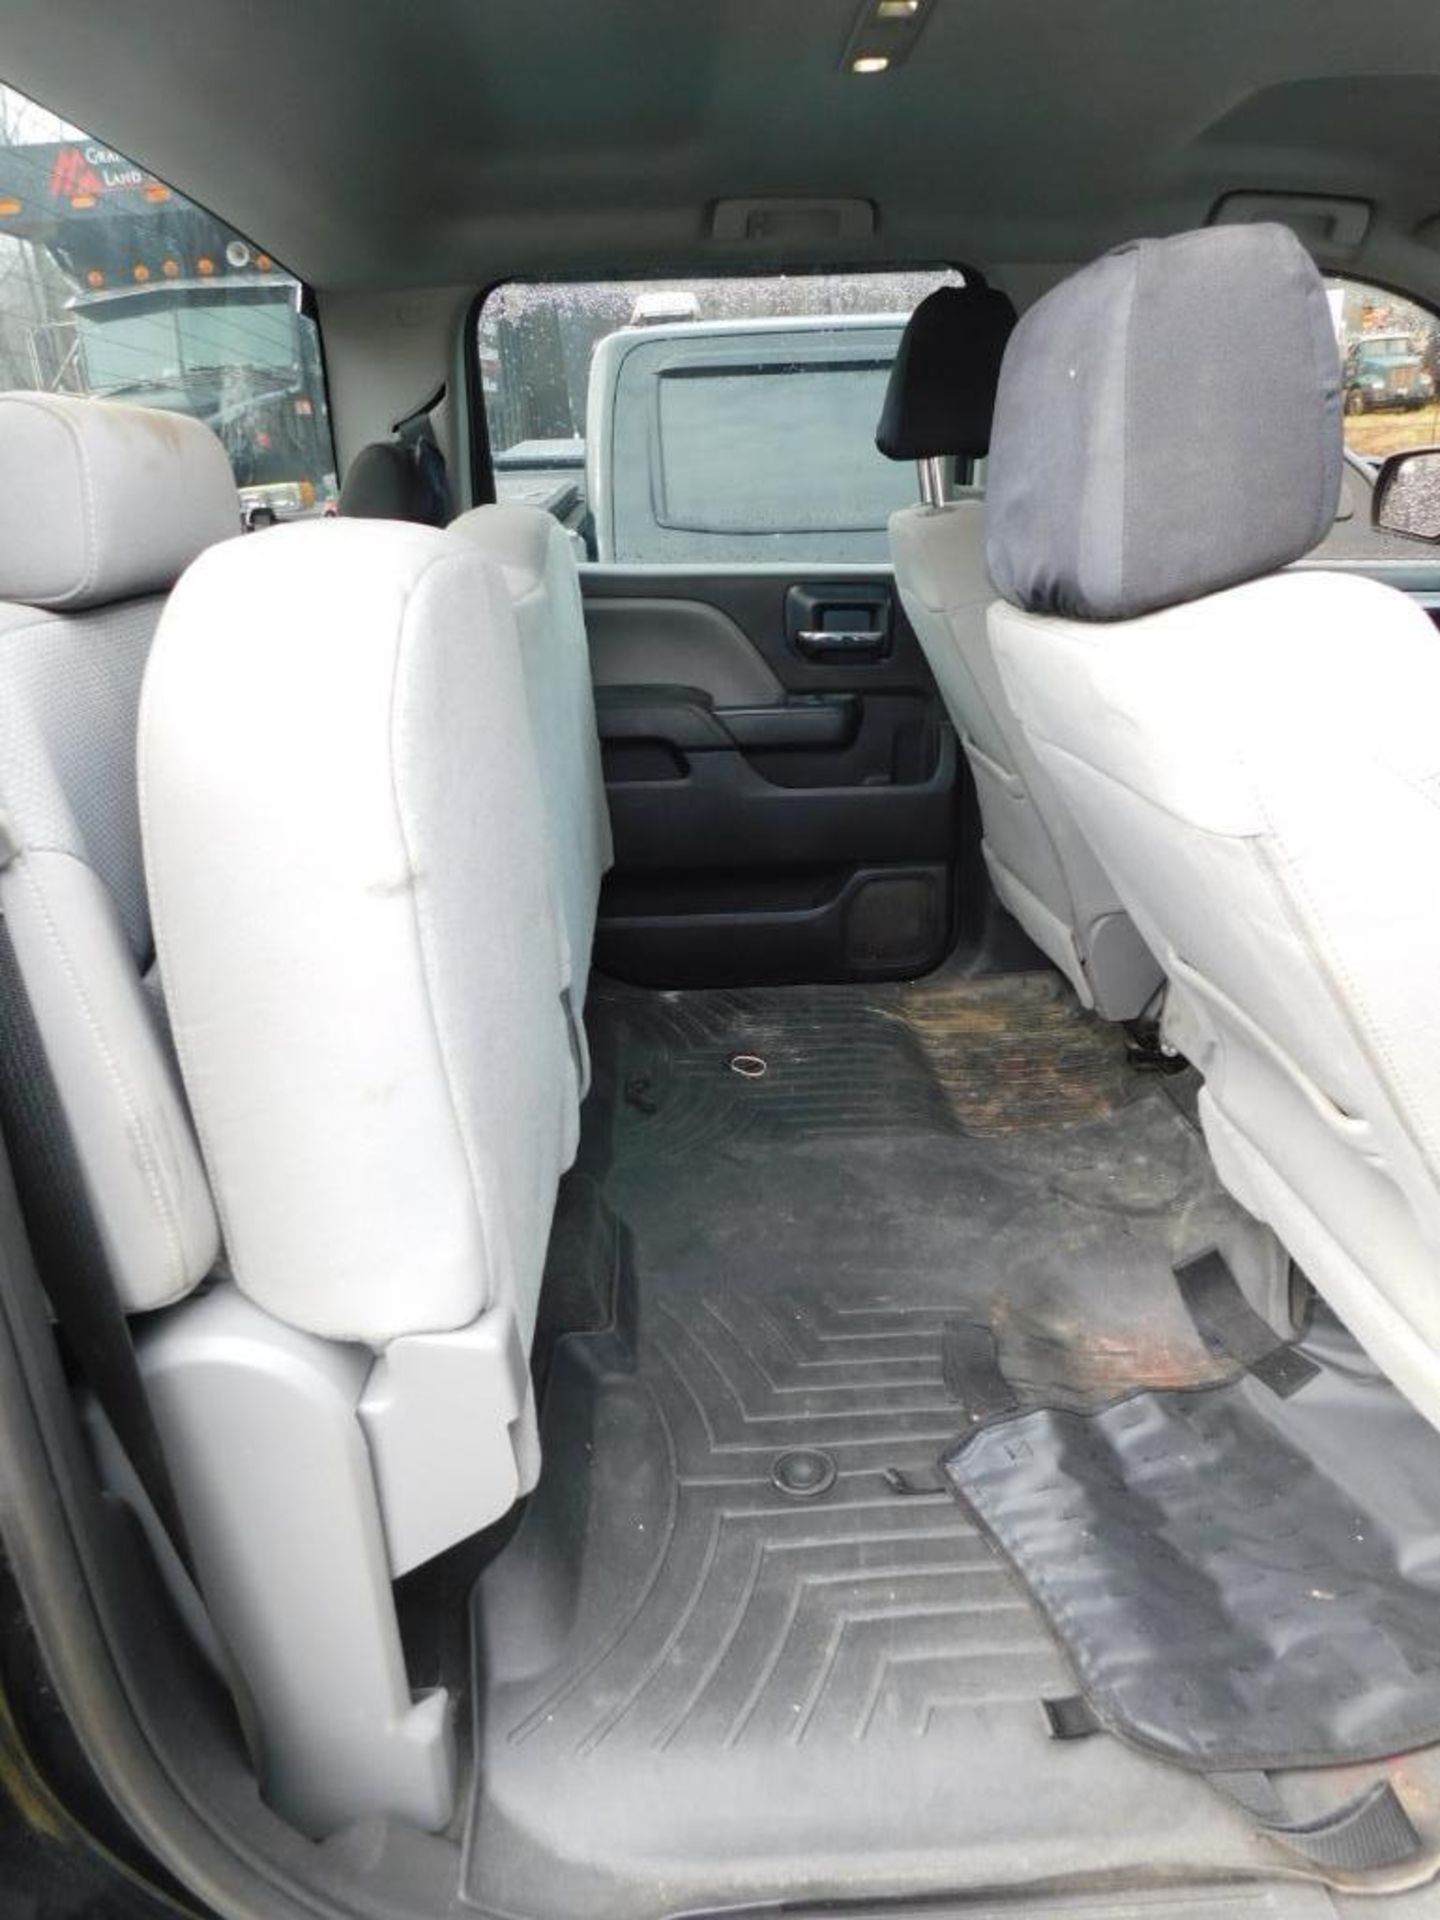 2018 Chevy Silverado 1500 Custom Crew Cab, 4-Wheel Drive, 5.3 Liter, Ecotec 3, V8 Gasoline Motor, Au - Image 10 of 11